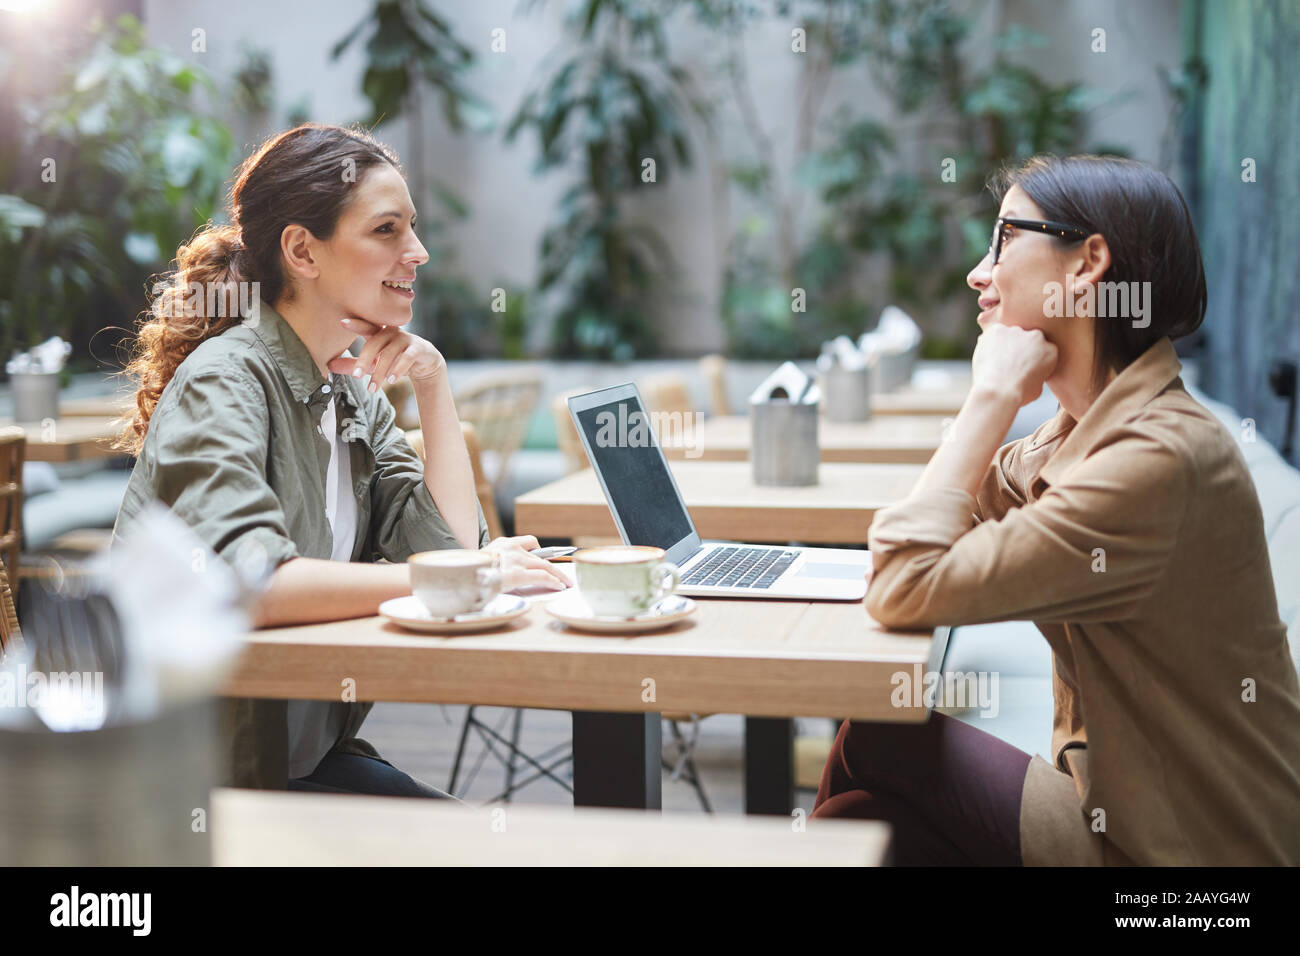 Seitenansicht Portrait von zwei moderne junge Frauen am Tisch sitzen im Café, beim Besprechen des Unternehmens während der Sitzung auf der Terrasse im Freien Platz, kopieren Stockfoto